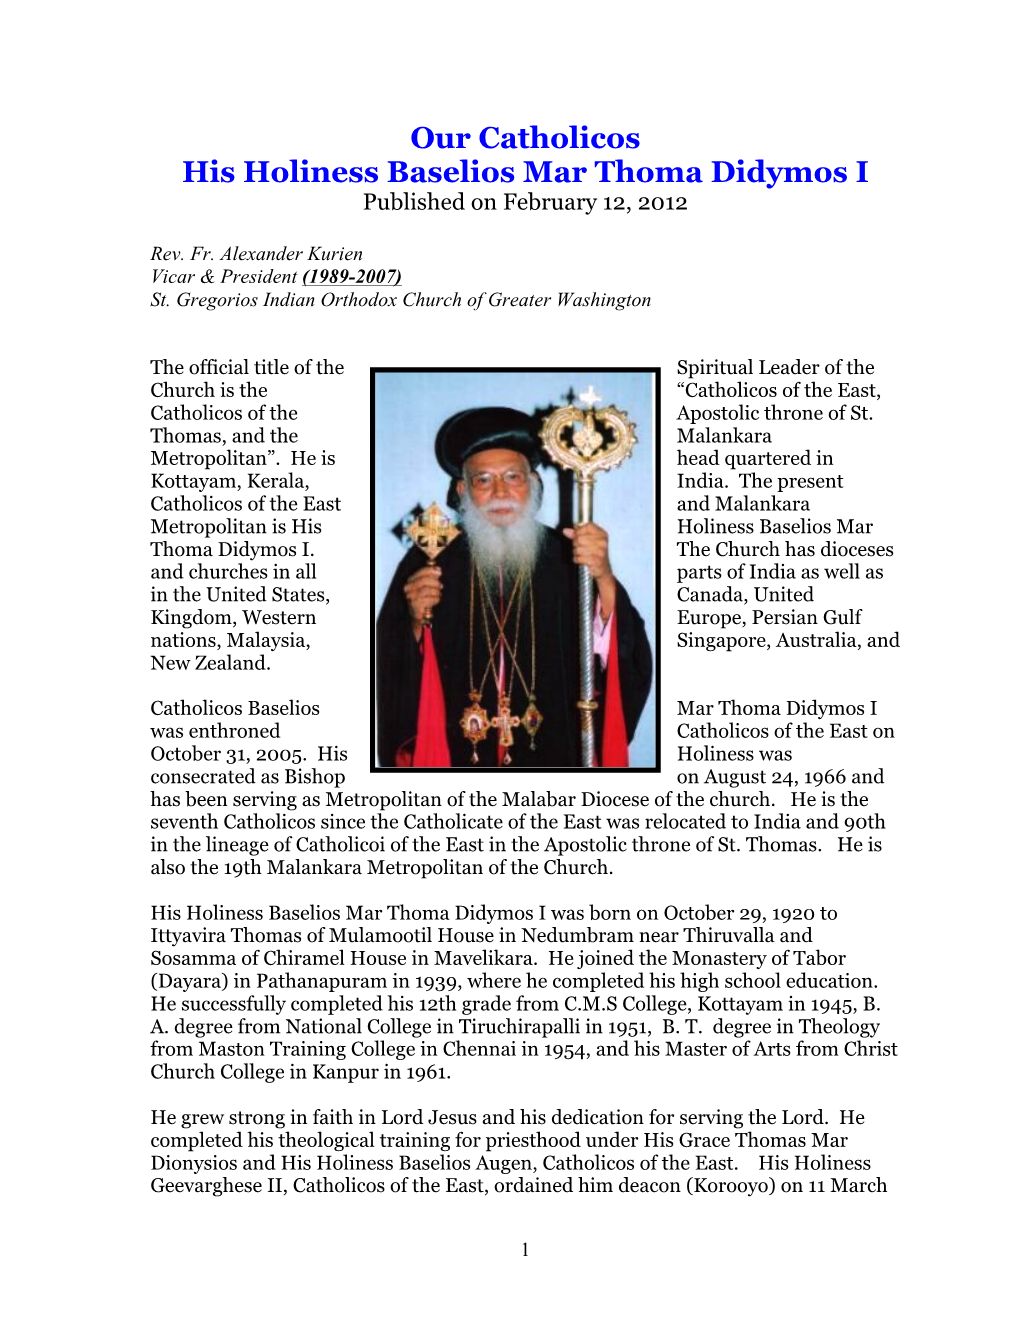 Our Catholicos His Holiness Baselios Mar Thoma Didymos I Published on February 12, 2012